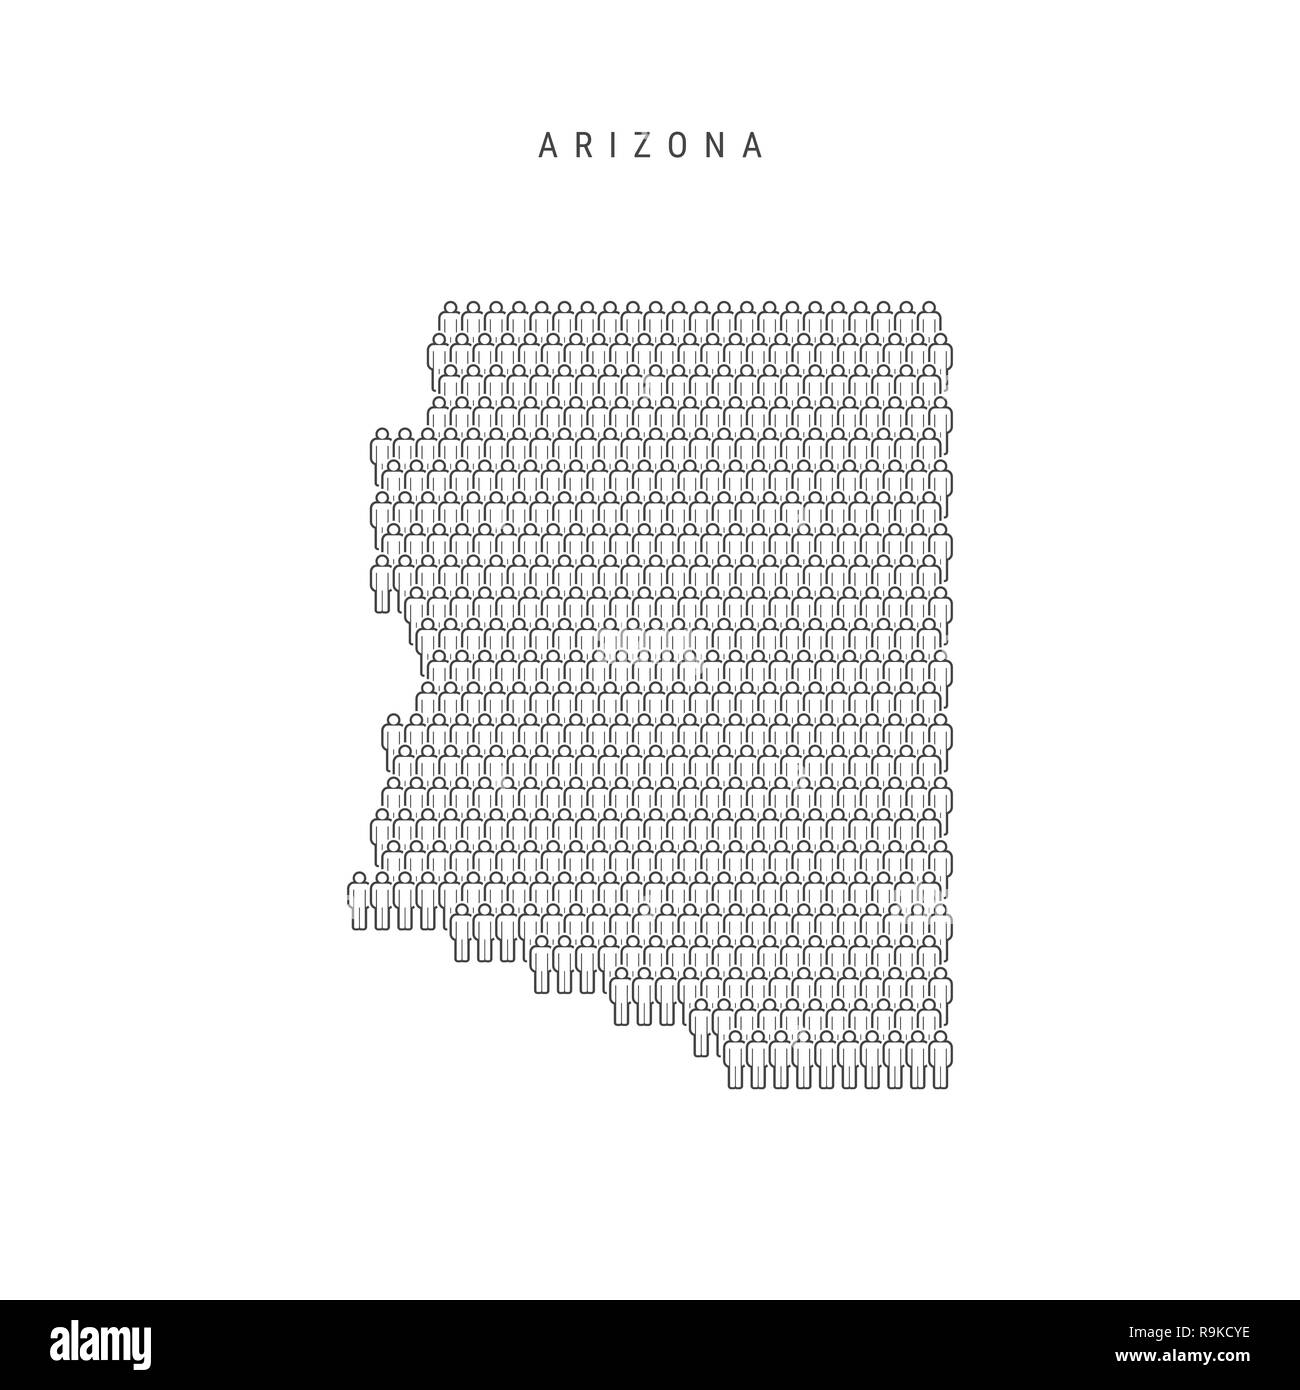 Leute Karte von Arizona, USA. Stilisierte Silhouette, Leute in der Form einer Karte von Arizona. Arizona Bevölkerung. Abbildung isoliert auf Whit Stockfoto